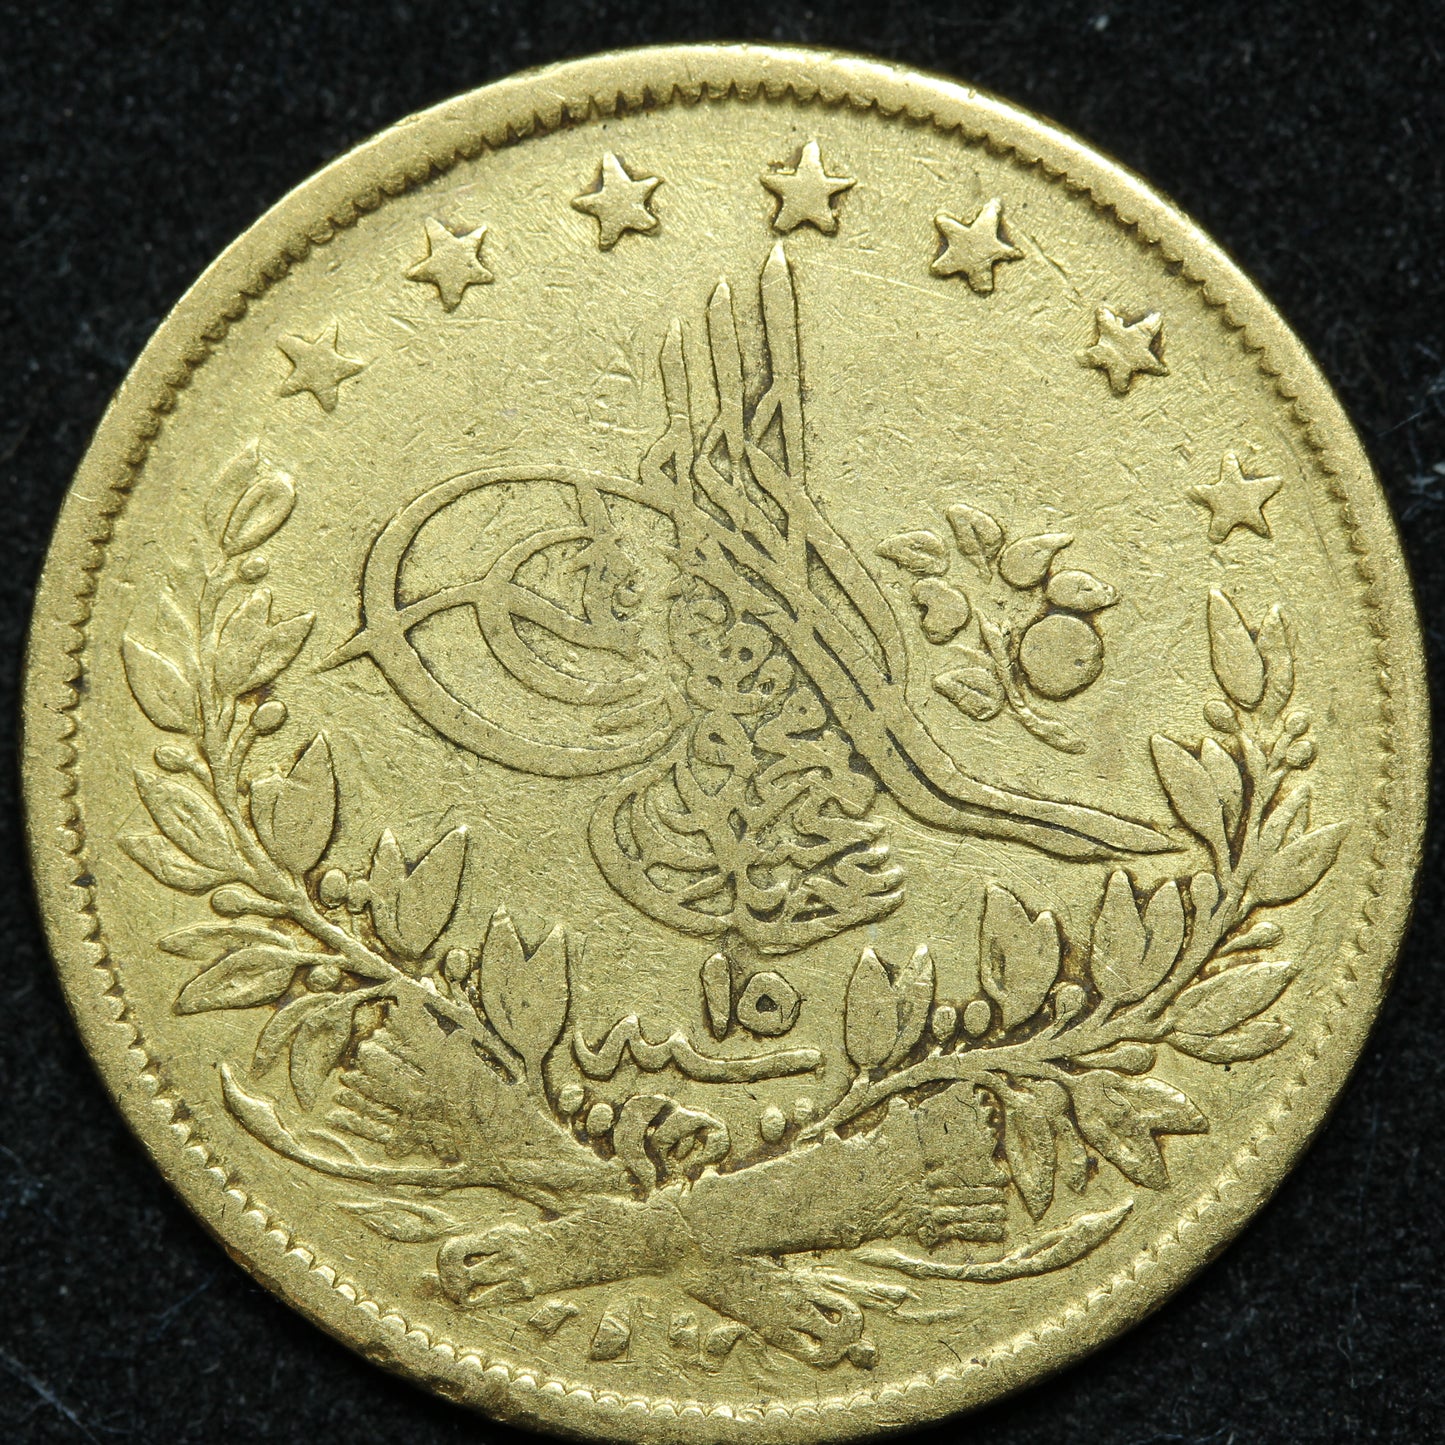 Turkey 100 Kurush 1255/15 AH (1839) Gold Coin